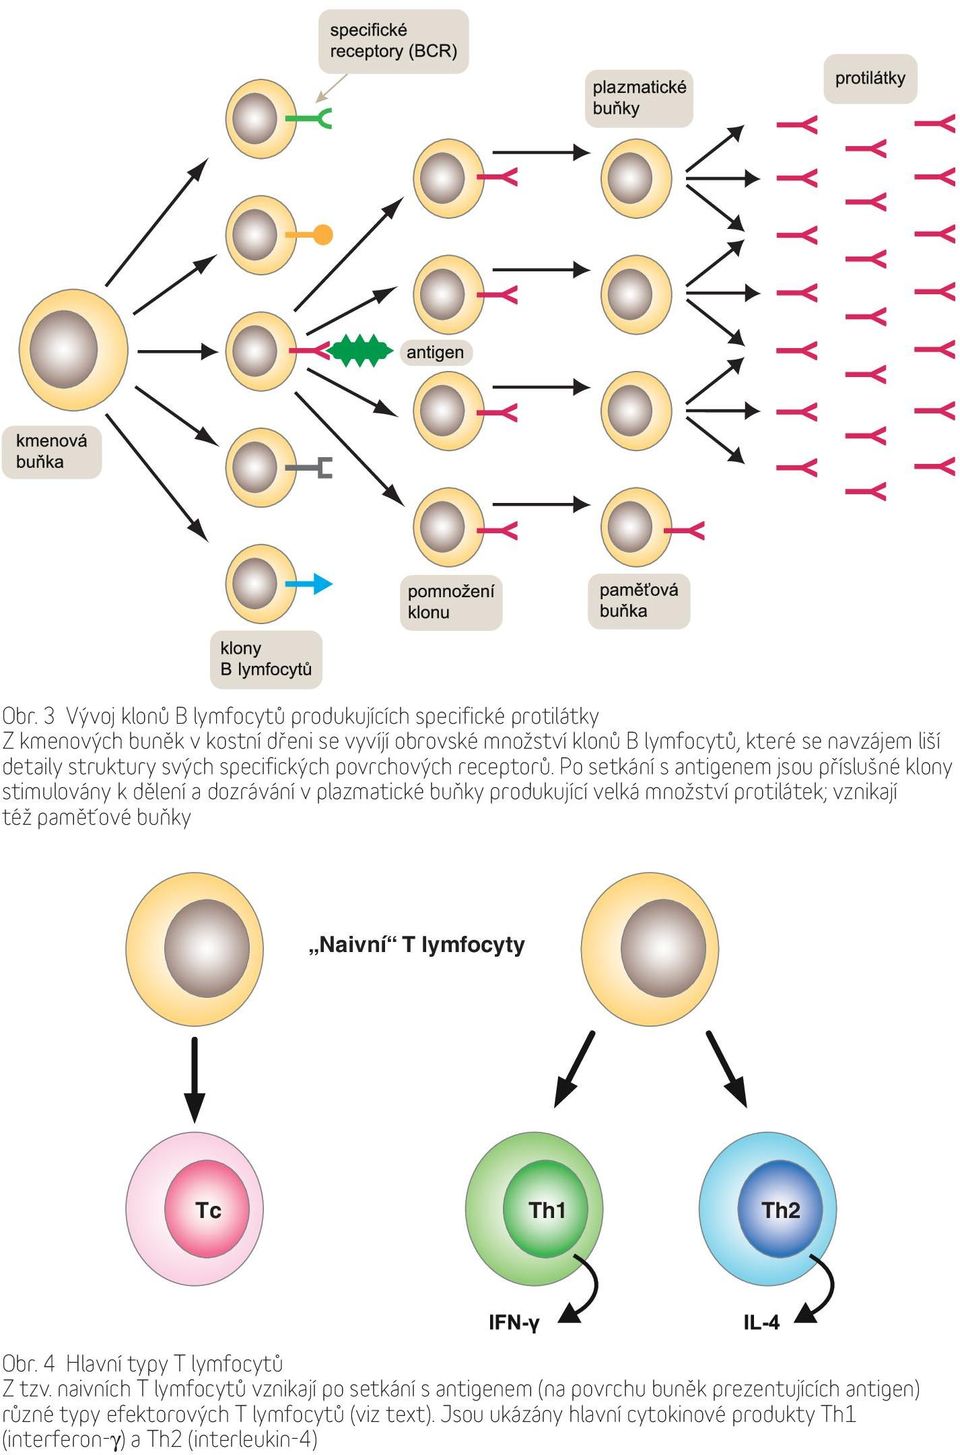 Po setkání s antigenem jsou příslušné klony stimulovány k dělení a dozrávání v plazmatické buňky produkující velká množství protilátek; vznikají též paměťové buňky Naivní